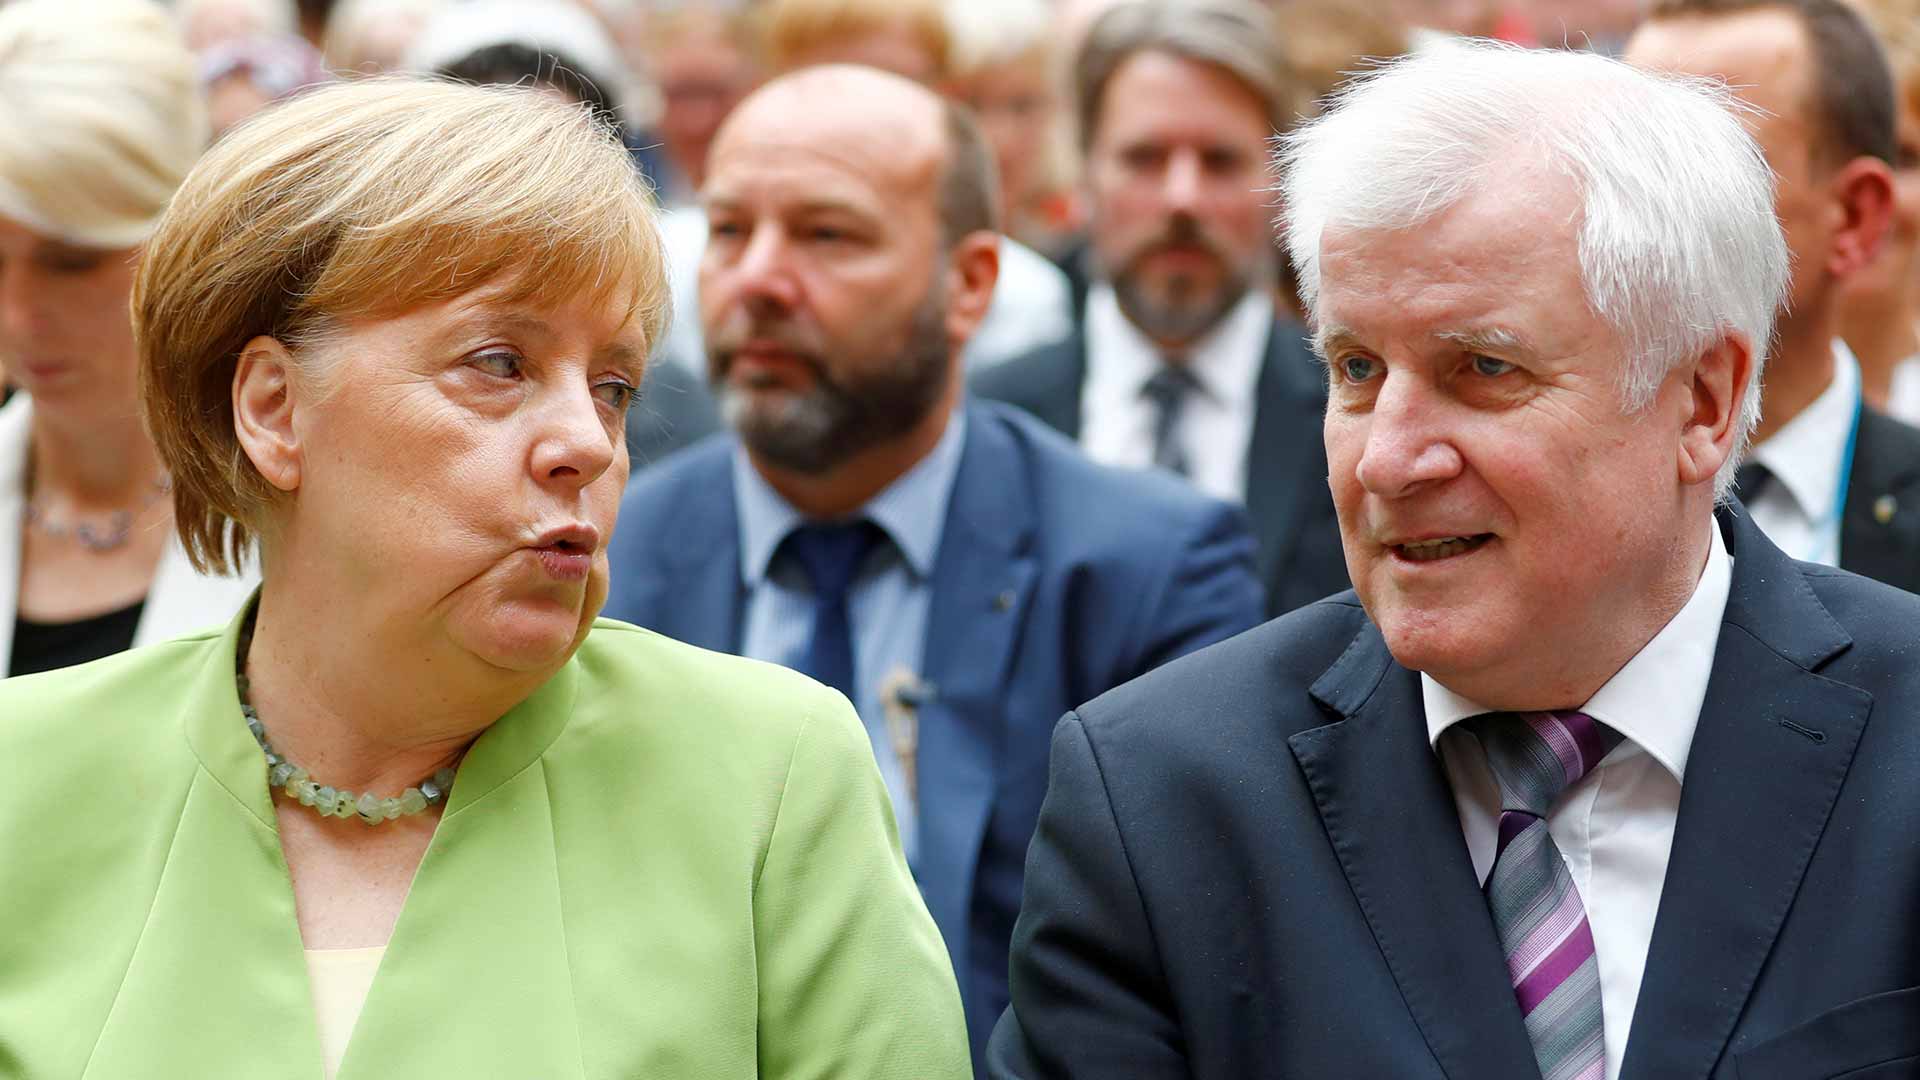 El ministro de Interior alemán amenaza con dimitir por la crisis migratoria